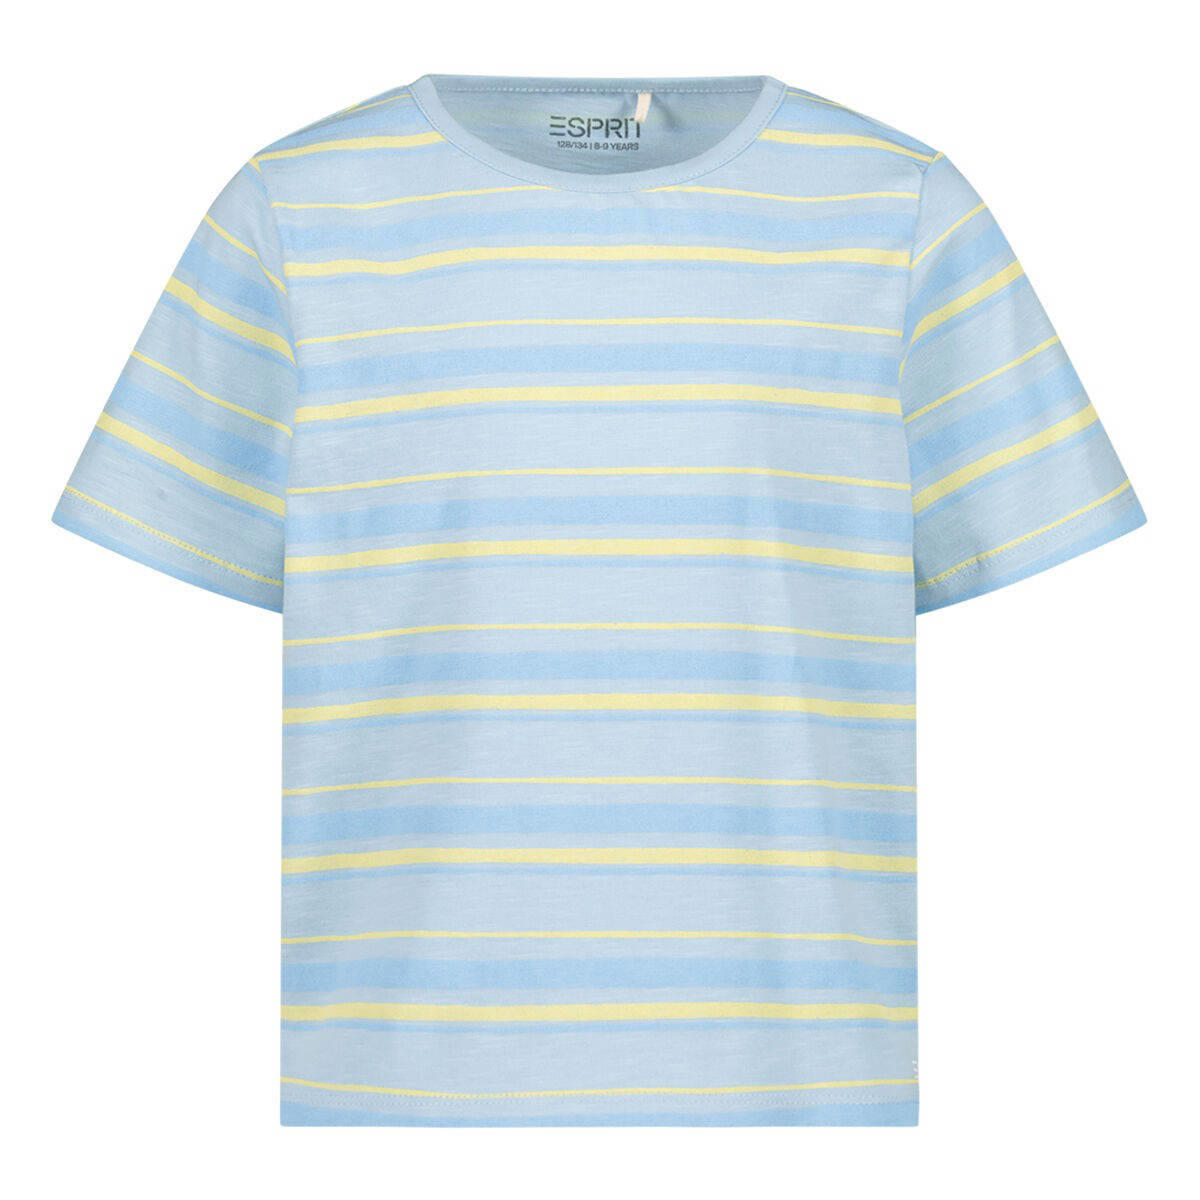 ESPRIT gestreept T-shirt blauw | kleertjes.com